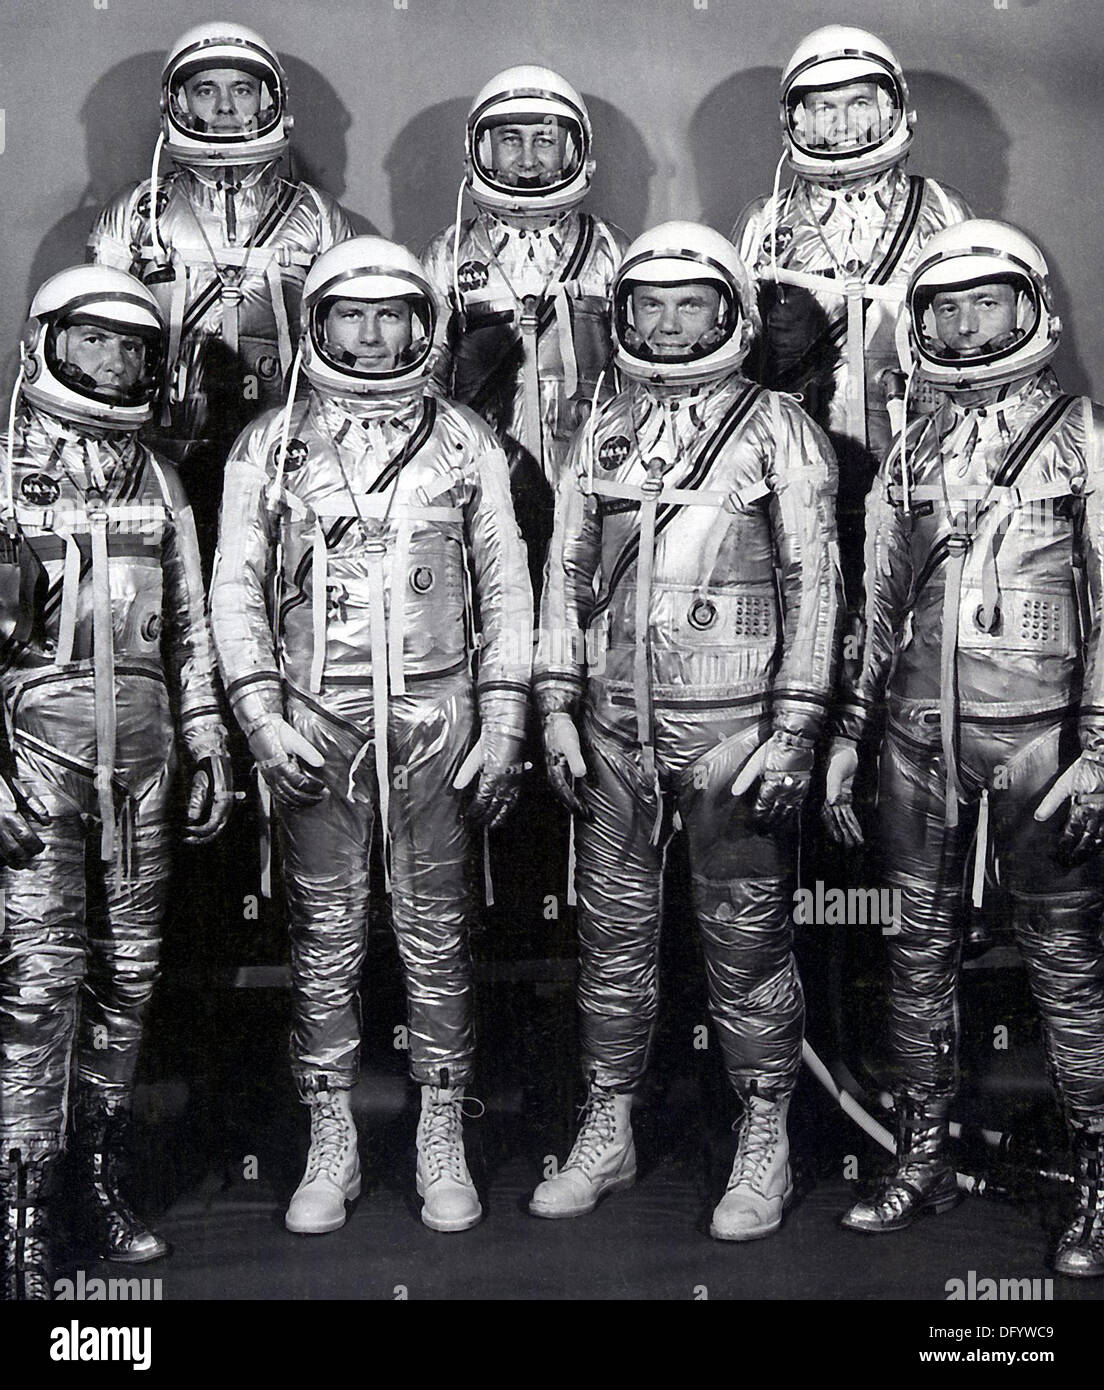 Das Gruppenbild der ursprünglichen sieben Astronauten für die Mercury-Projekt 27. April 1959 in Houston, Texas. Von links nach rechts vorne: Walter M. Wally Schirra, Donald K. Deke Slayton, John H. Glenn, Jr., und Scott Carpenter. Von links nach rechts hinten: Alan B. Shepard, Virgil I. Gus Grissom und L. Gordon Cooper, Jr. Carpenter, einer der ursprünglichen Quecksilber sieben Astronauten und der zweite Amerikaner, um die Erde zu umkreisen starb 10. Oktober 2013 im Alter von 88 Jahren. Stockfoto